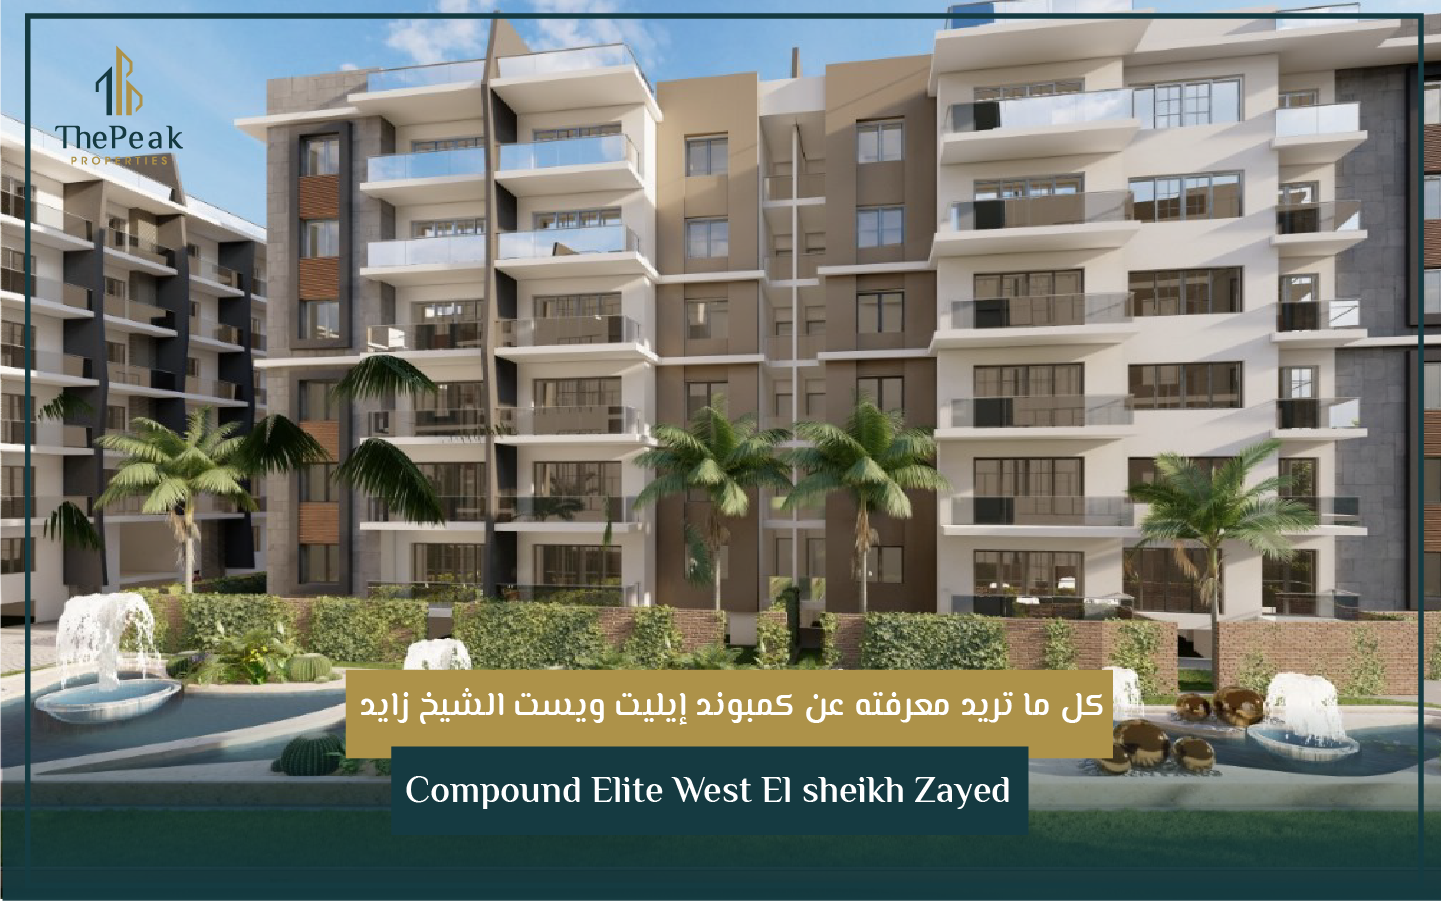 "شقة للبيع بالتقسيط في الشيخ زايد  مساحة 199 متر  مقدم 15 % و تقسيط يصل إلي 8 سنوات  في مشروع Compound Elite West El sheikh Zayed" | THE PEAK PROPERTIES